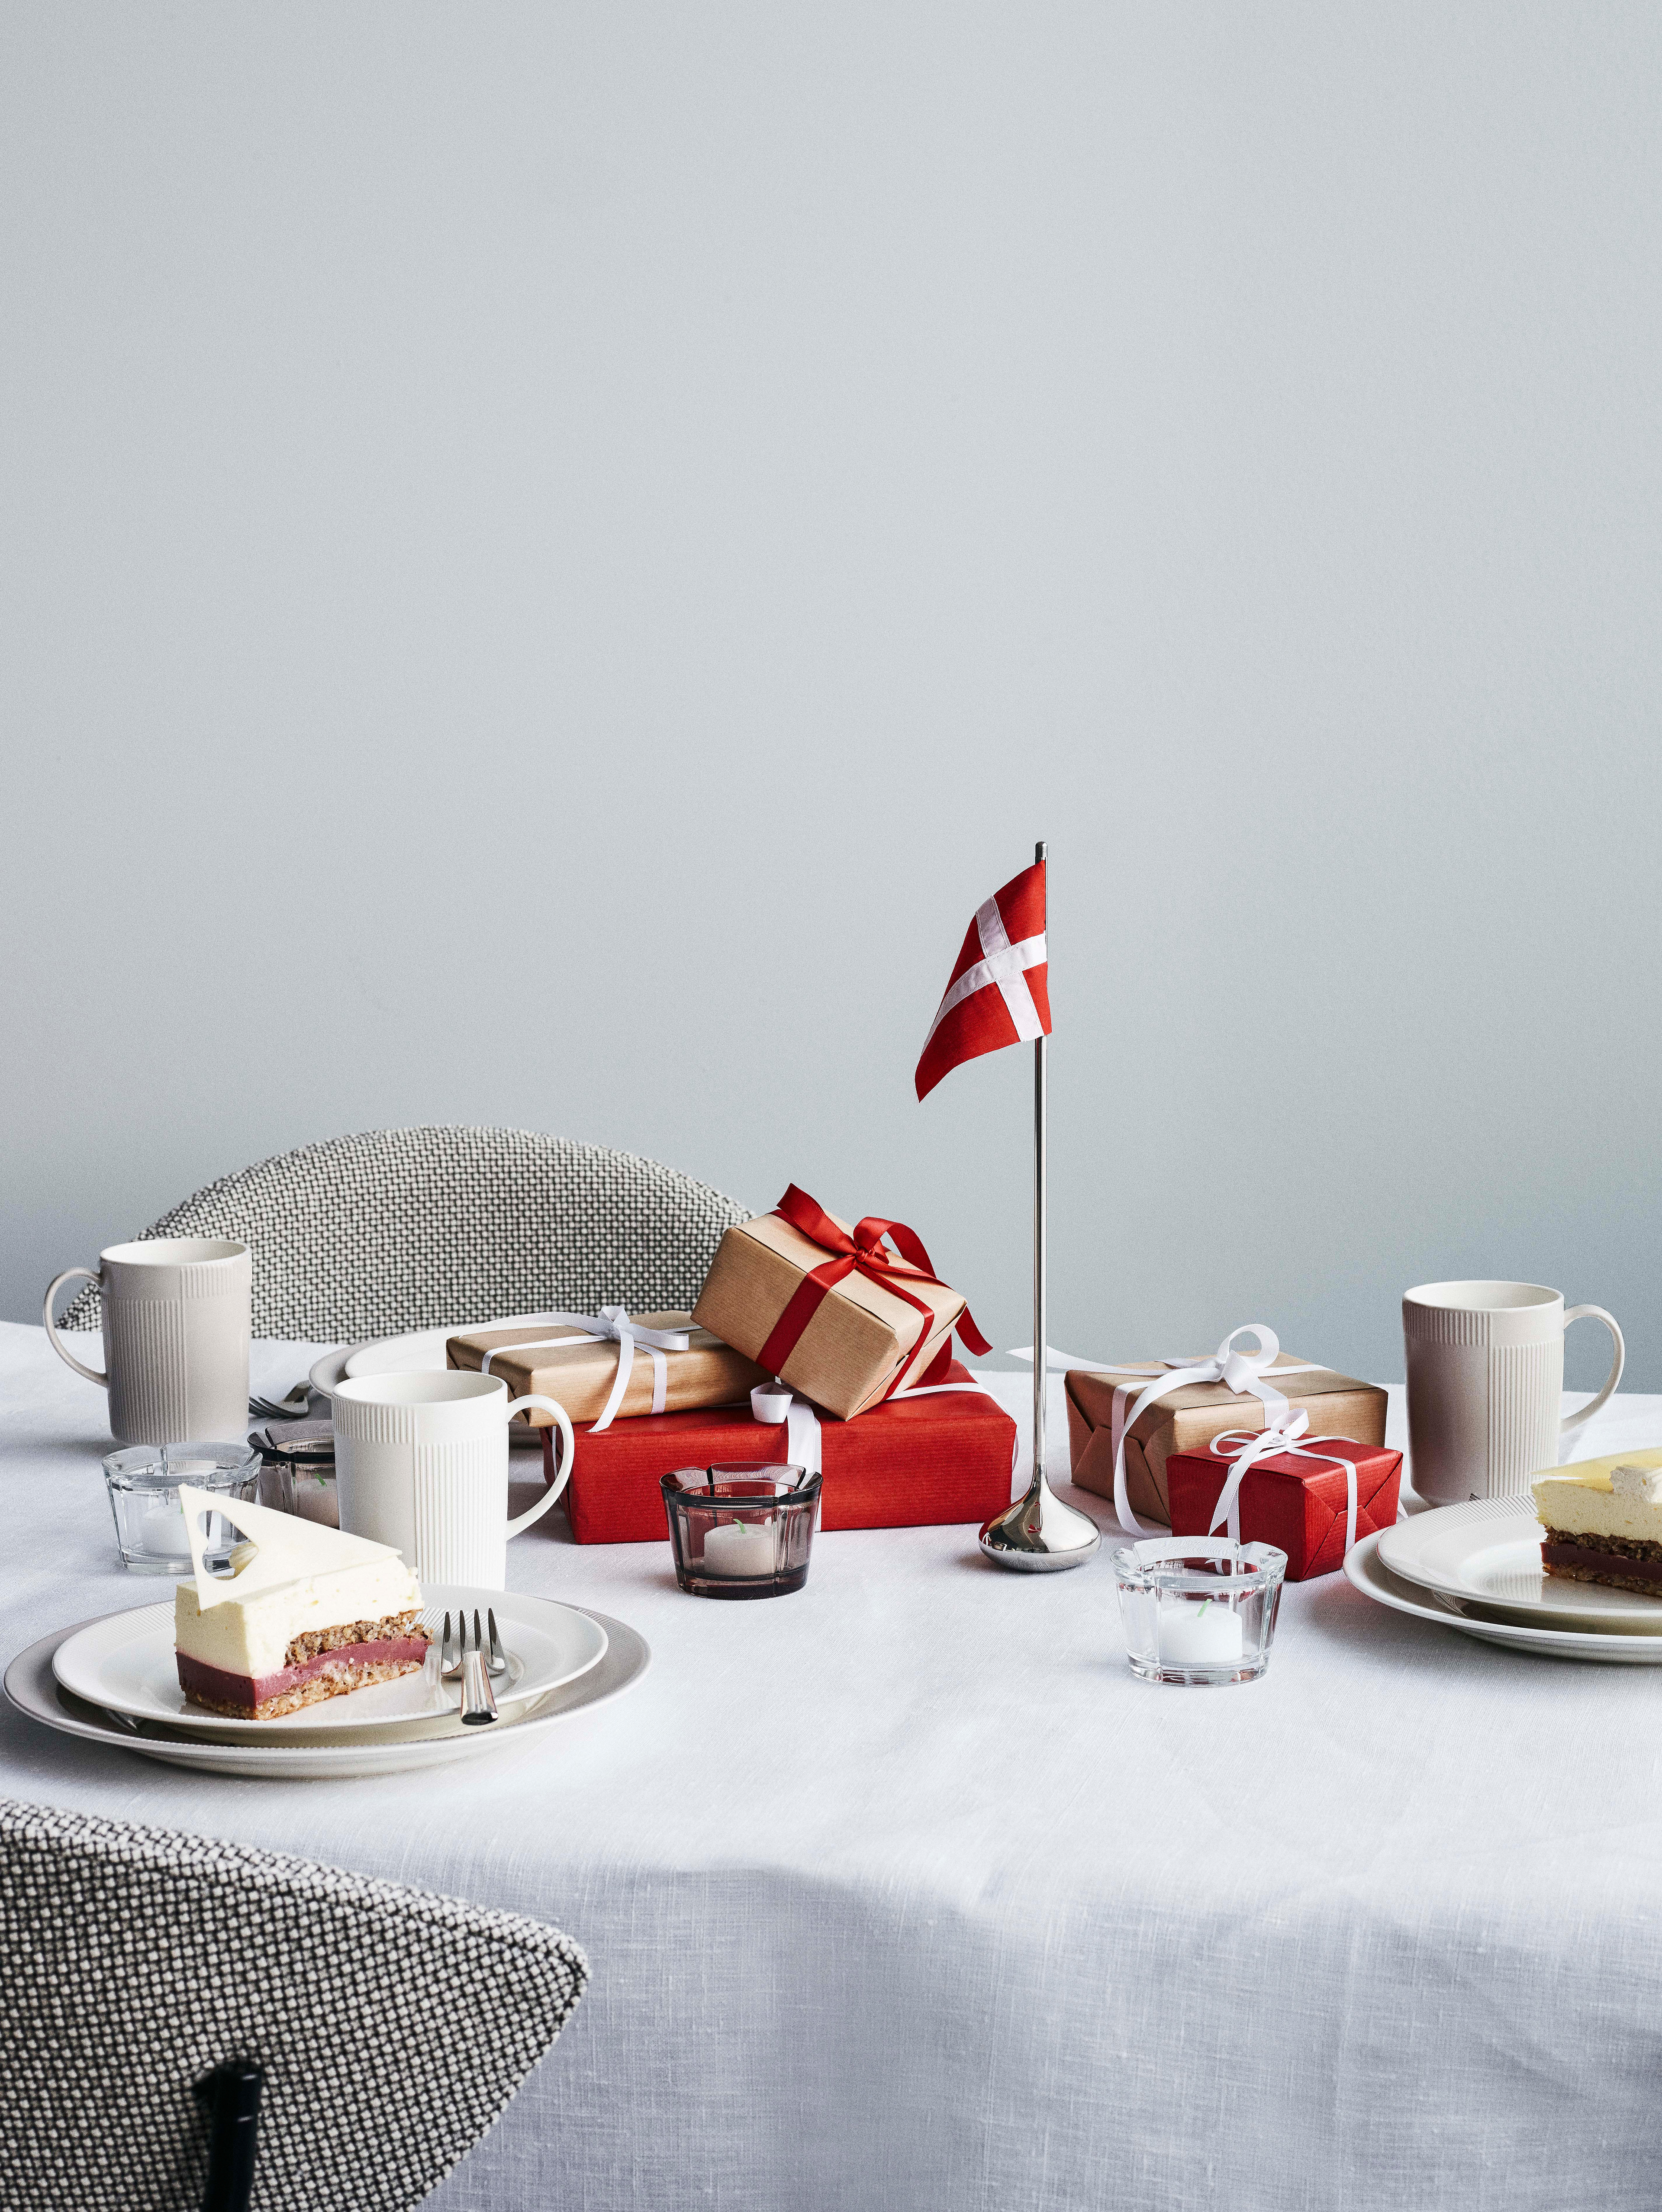 Geburtstagstisch mit dänischer Tischfahne, Geschenken und Kuchen